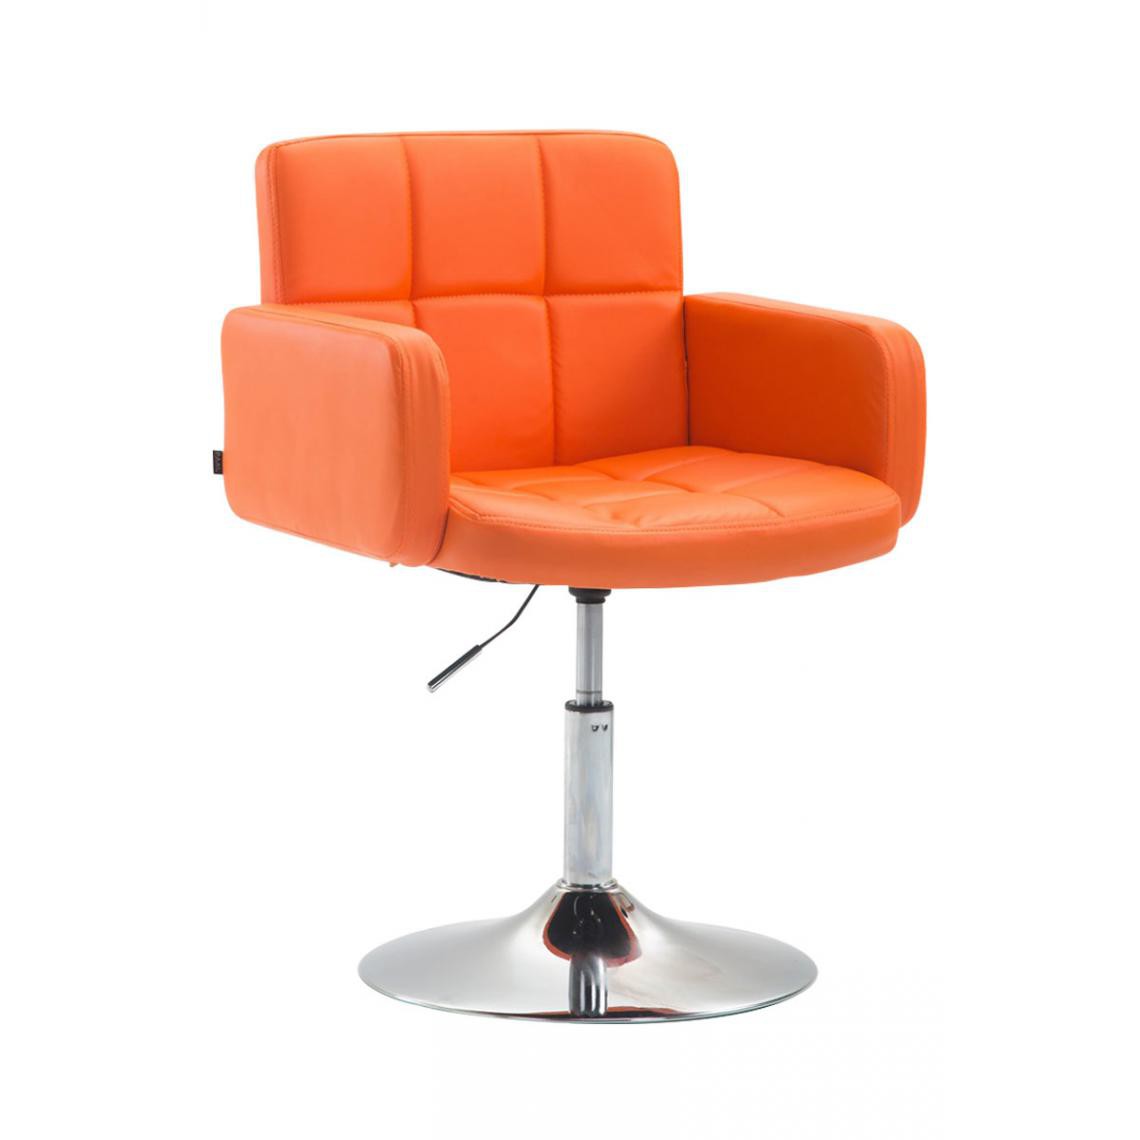 Icaverne - Admirable Chaise longue reference Nouakchott Angeles en cuir synthétique couleur Orange - Transats, chaises longues